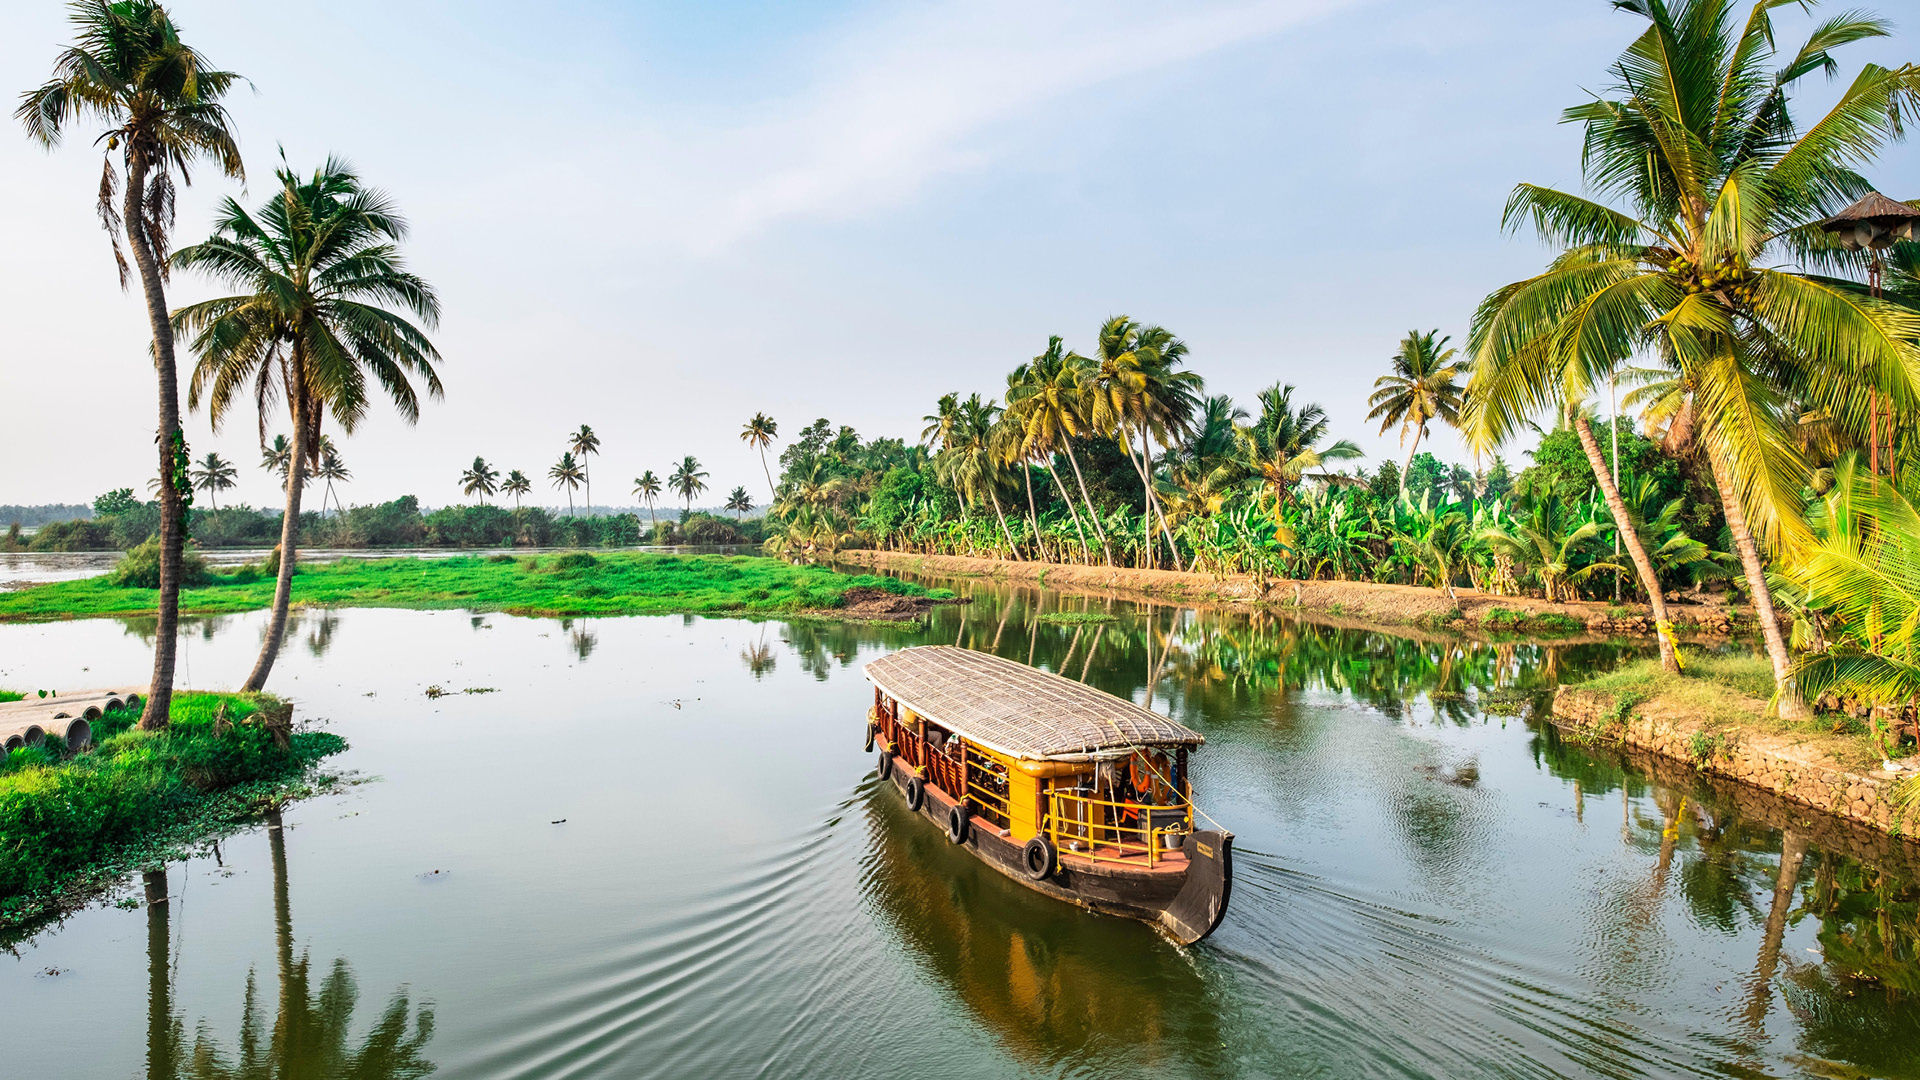 1,000+ Free Kerala & India Images - Pixabay